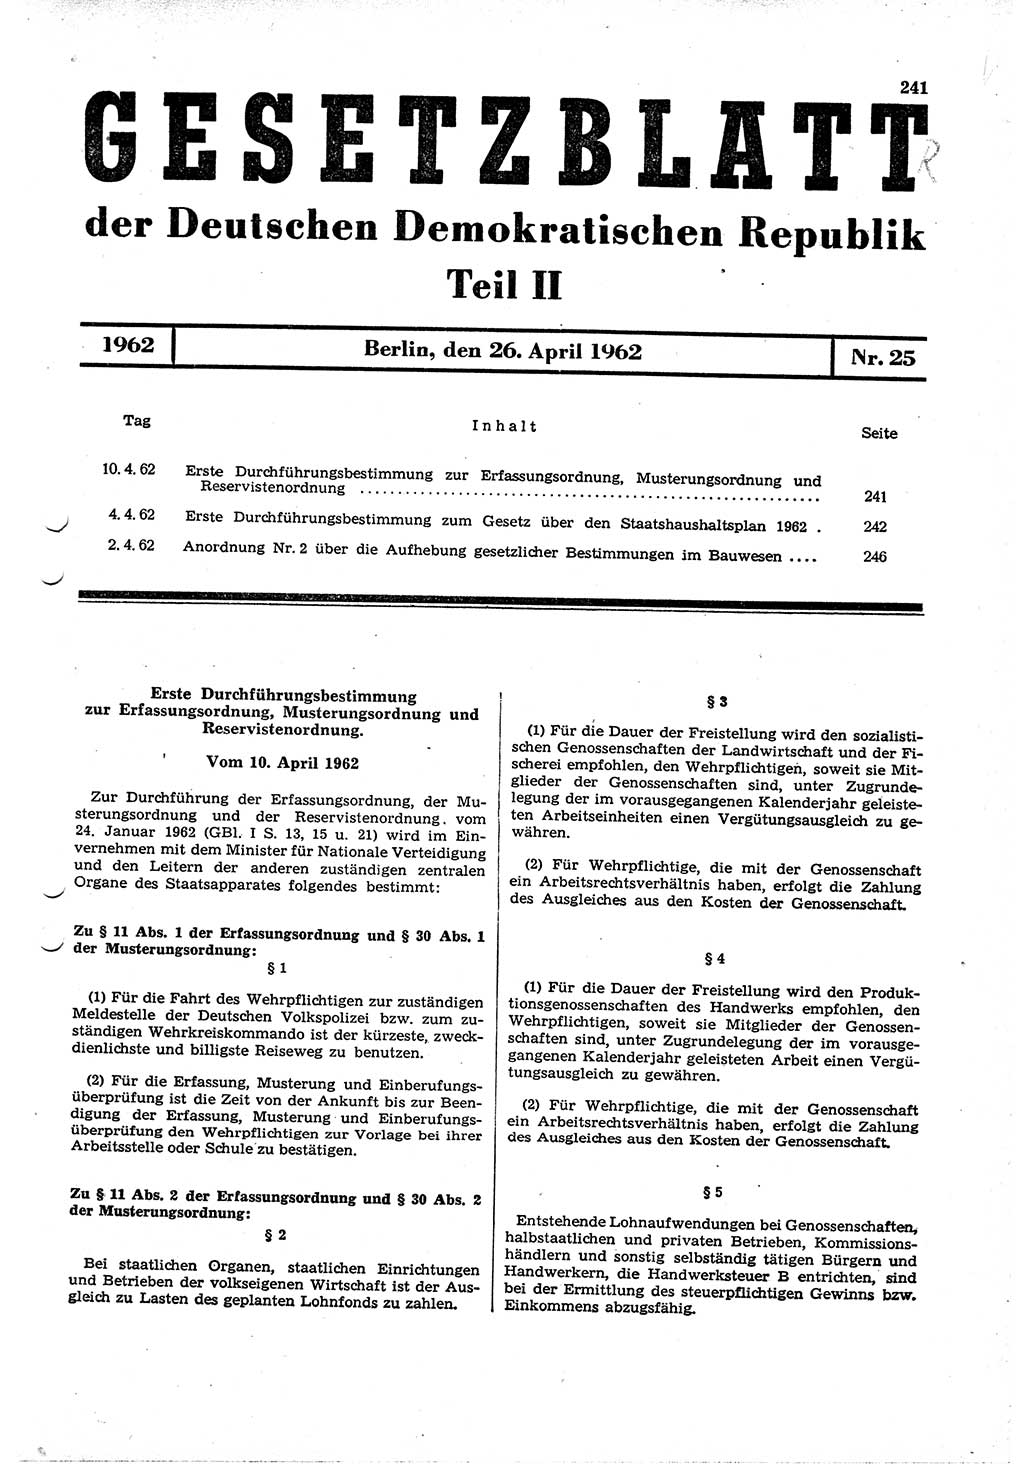 Gesetzblatt (GBl.) der Deutschen Demokratischen Republik (DDR) Teil ⅠⅠ 1962, Seite 241 (GBl. DDR ⅠⅠ 1962, S. 241)